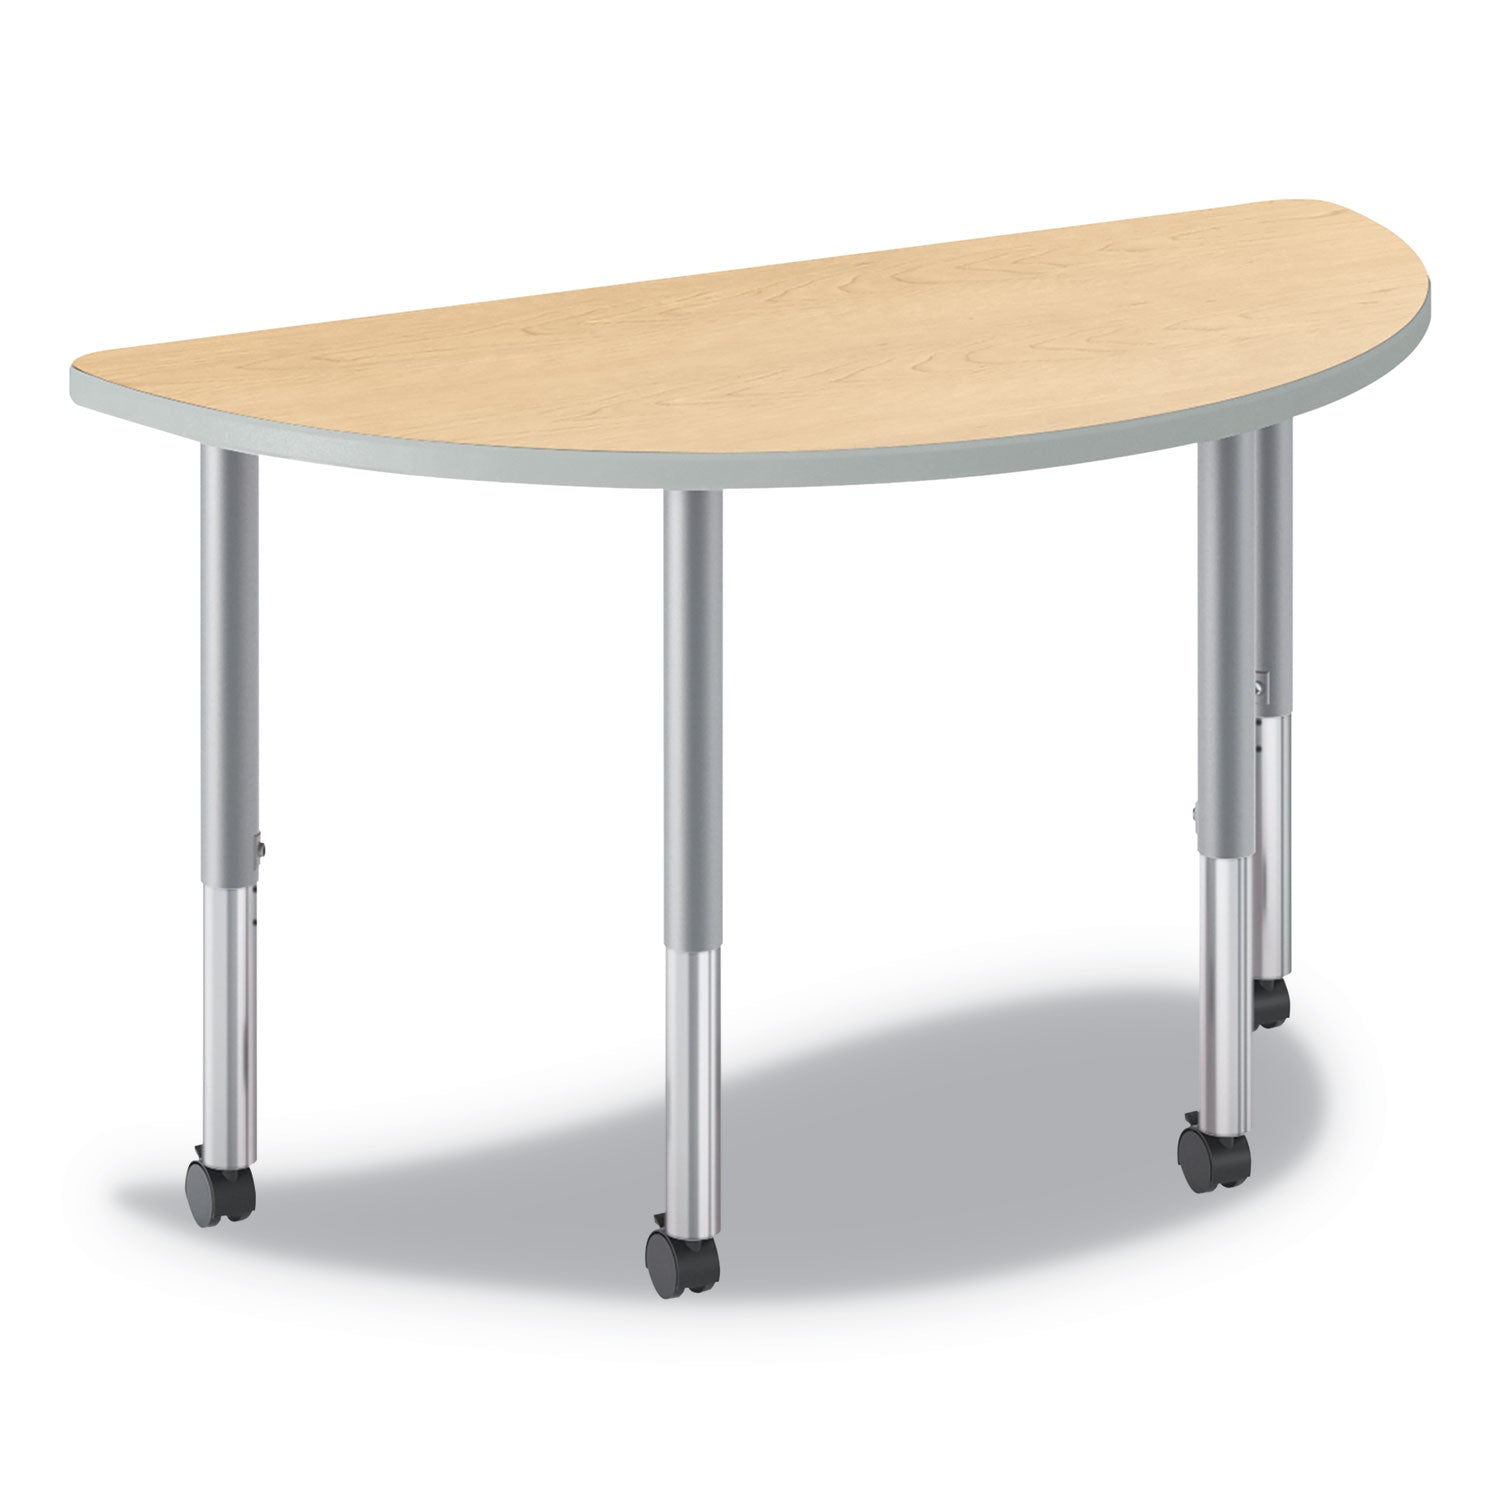 build-half-round-shape-table-top-60w-x-30d-natural-maple_honsh3060endk - 2